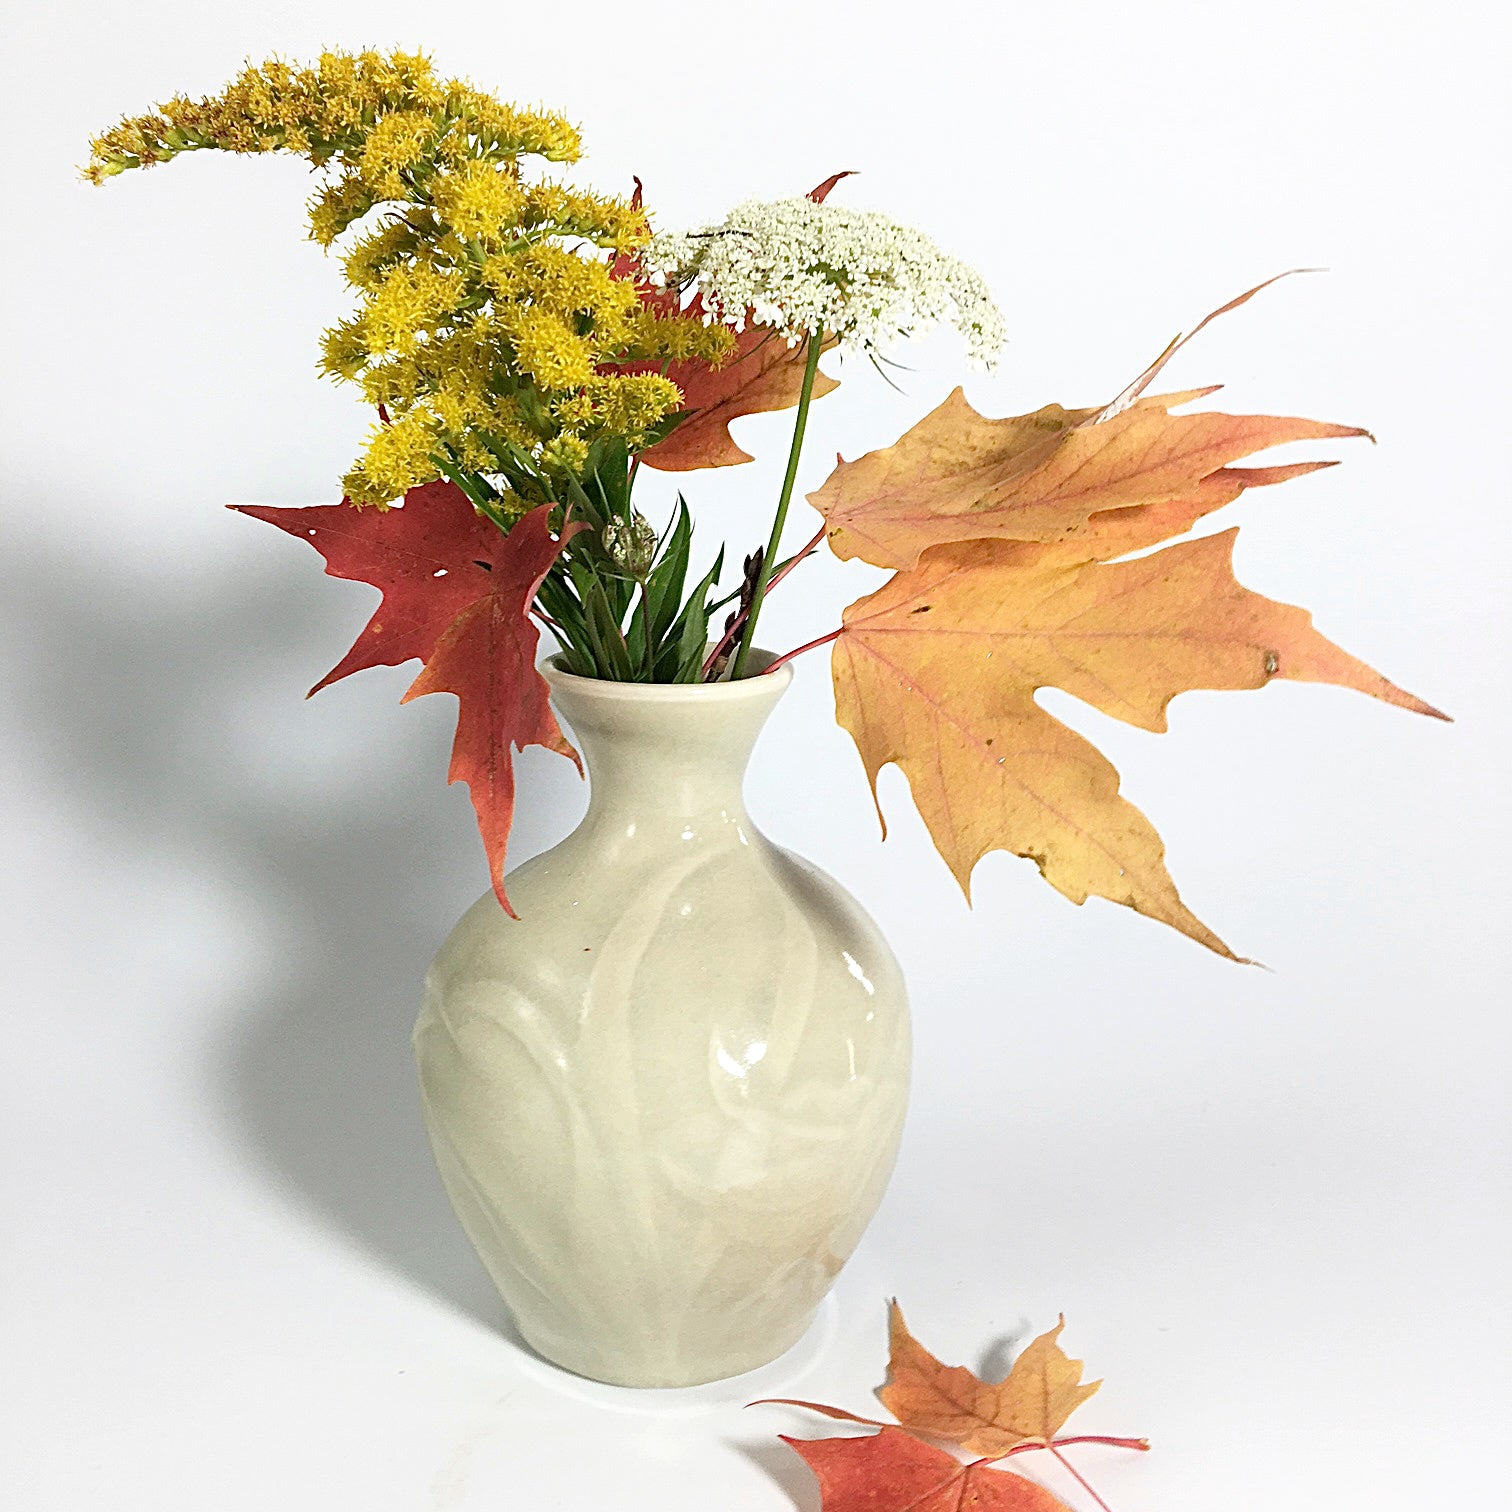 Porcelain vase with lilies and clair de lune glaze